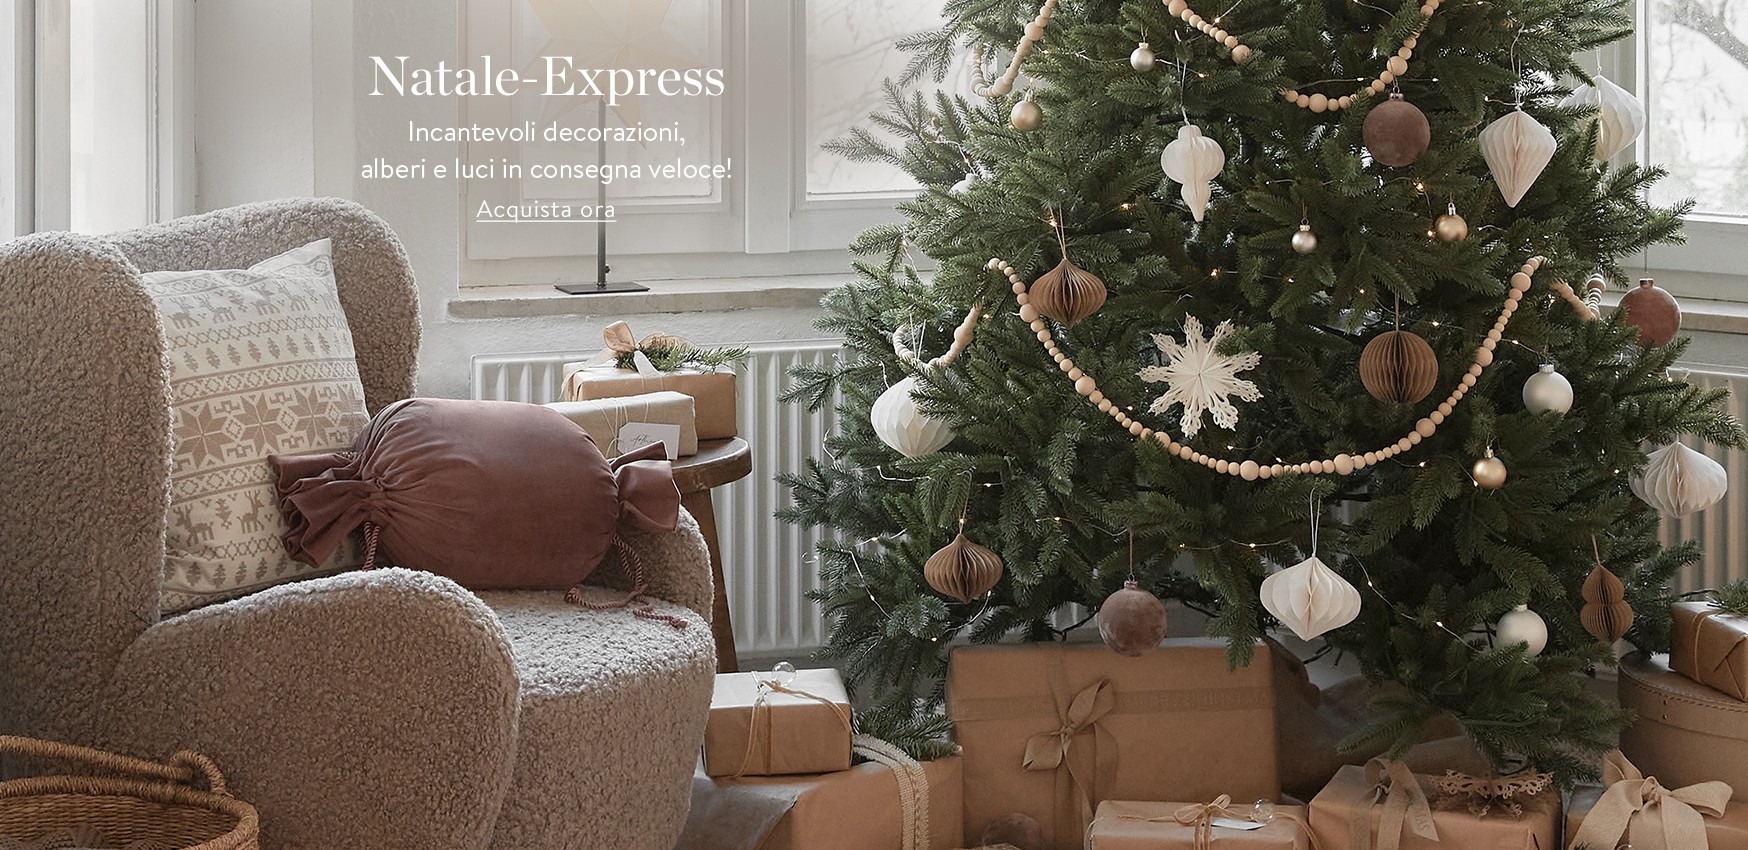 Natale-Express Incantevoli decorazioni, alberi e luci in consegna veloce!